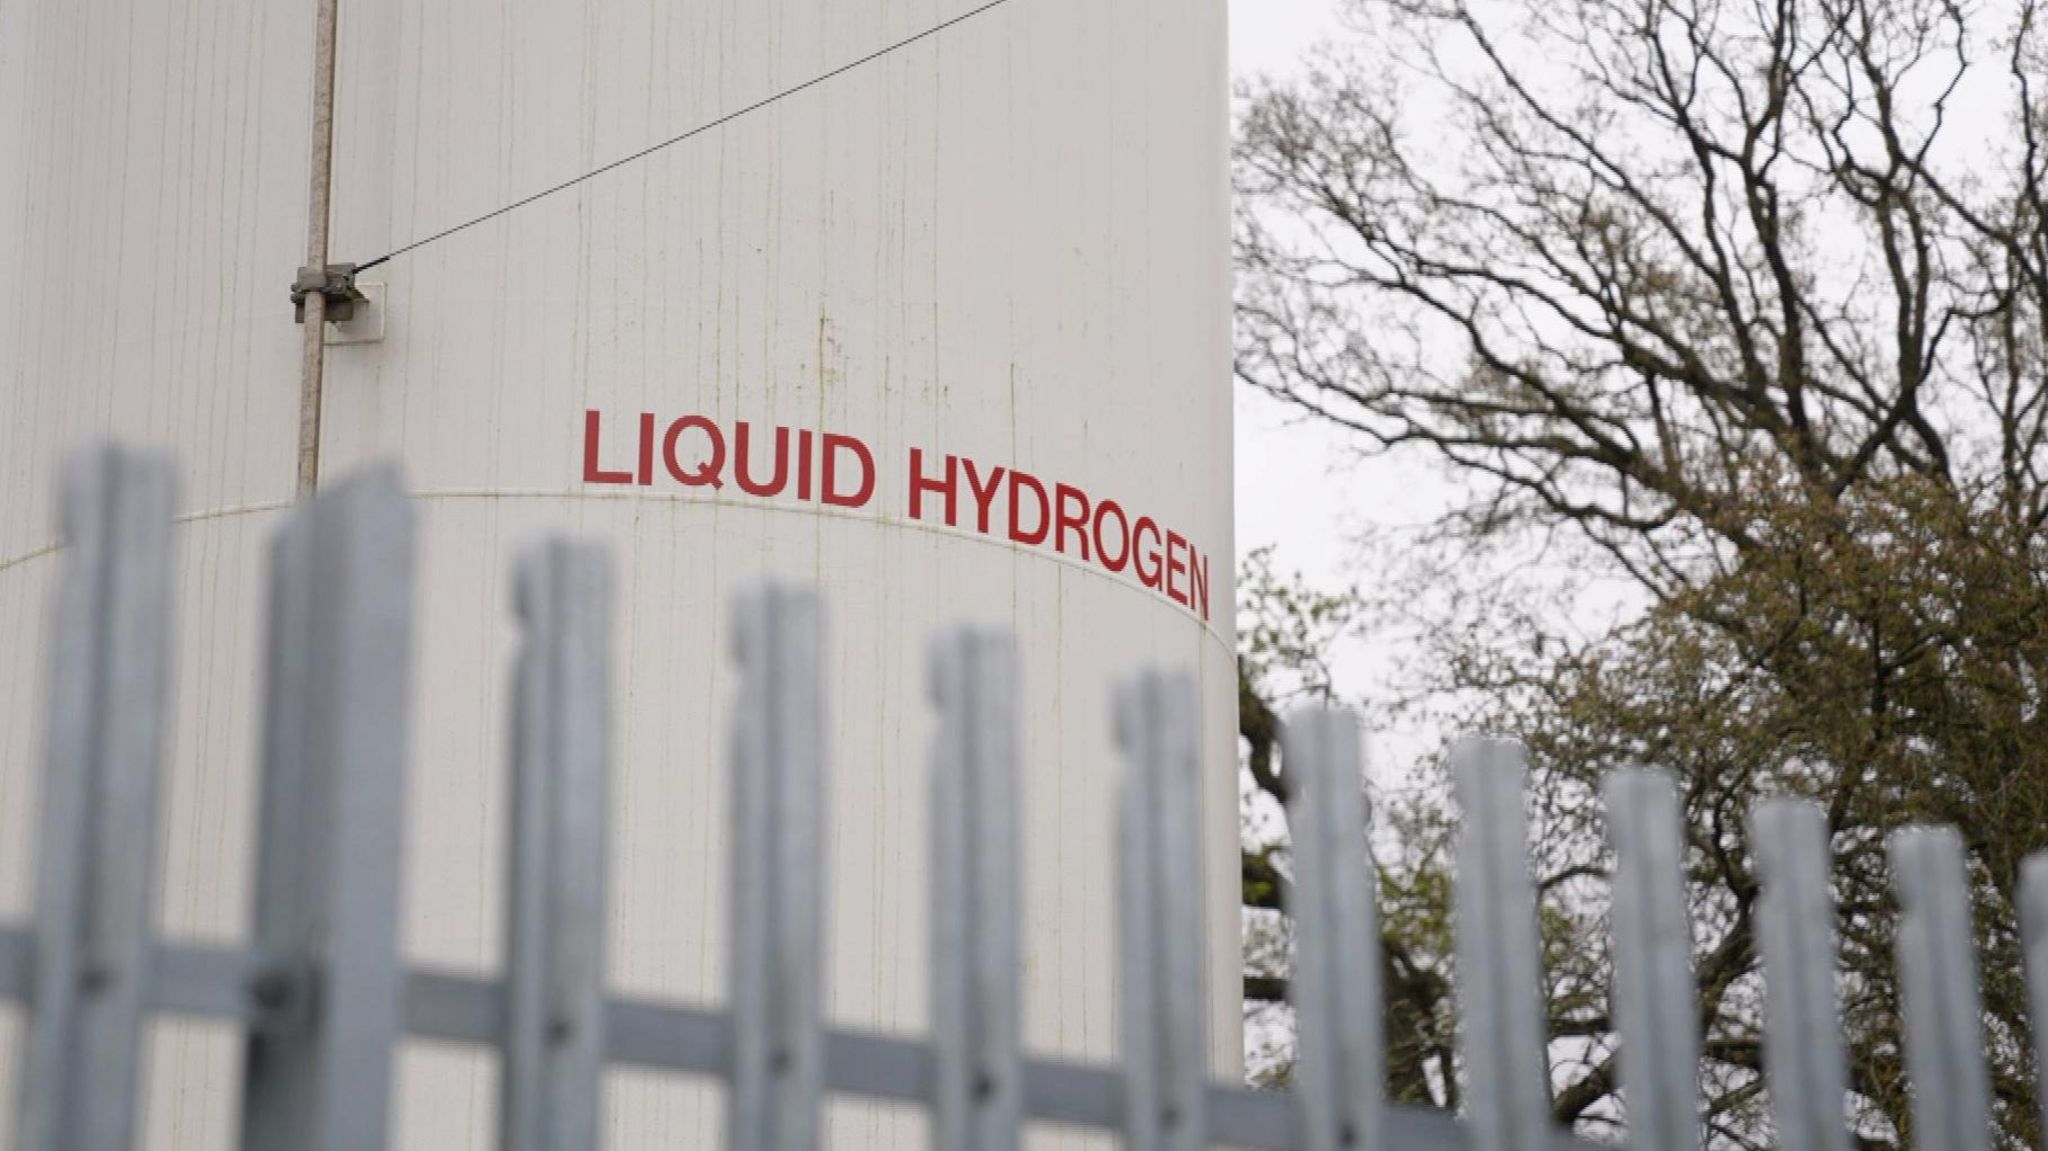 Liquid hydrogen storage